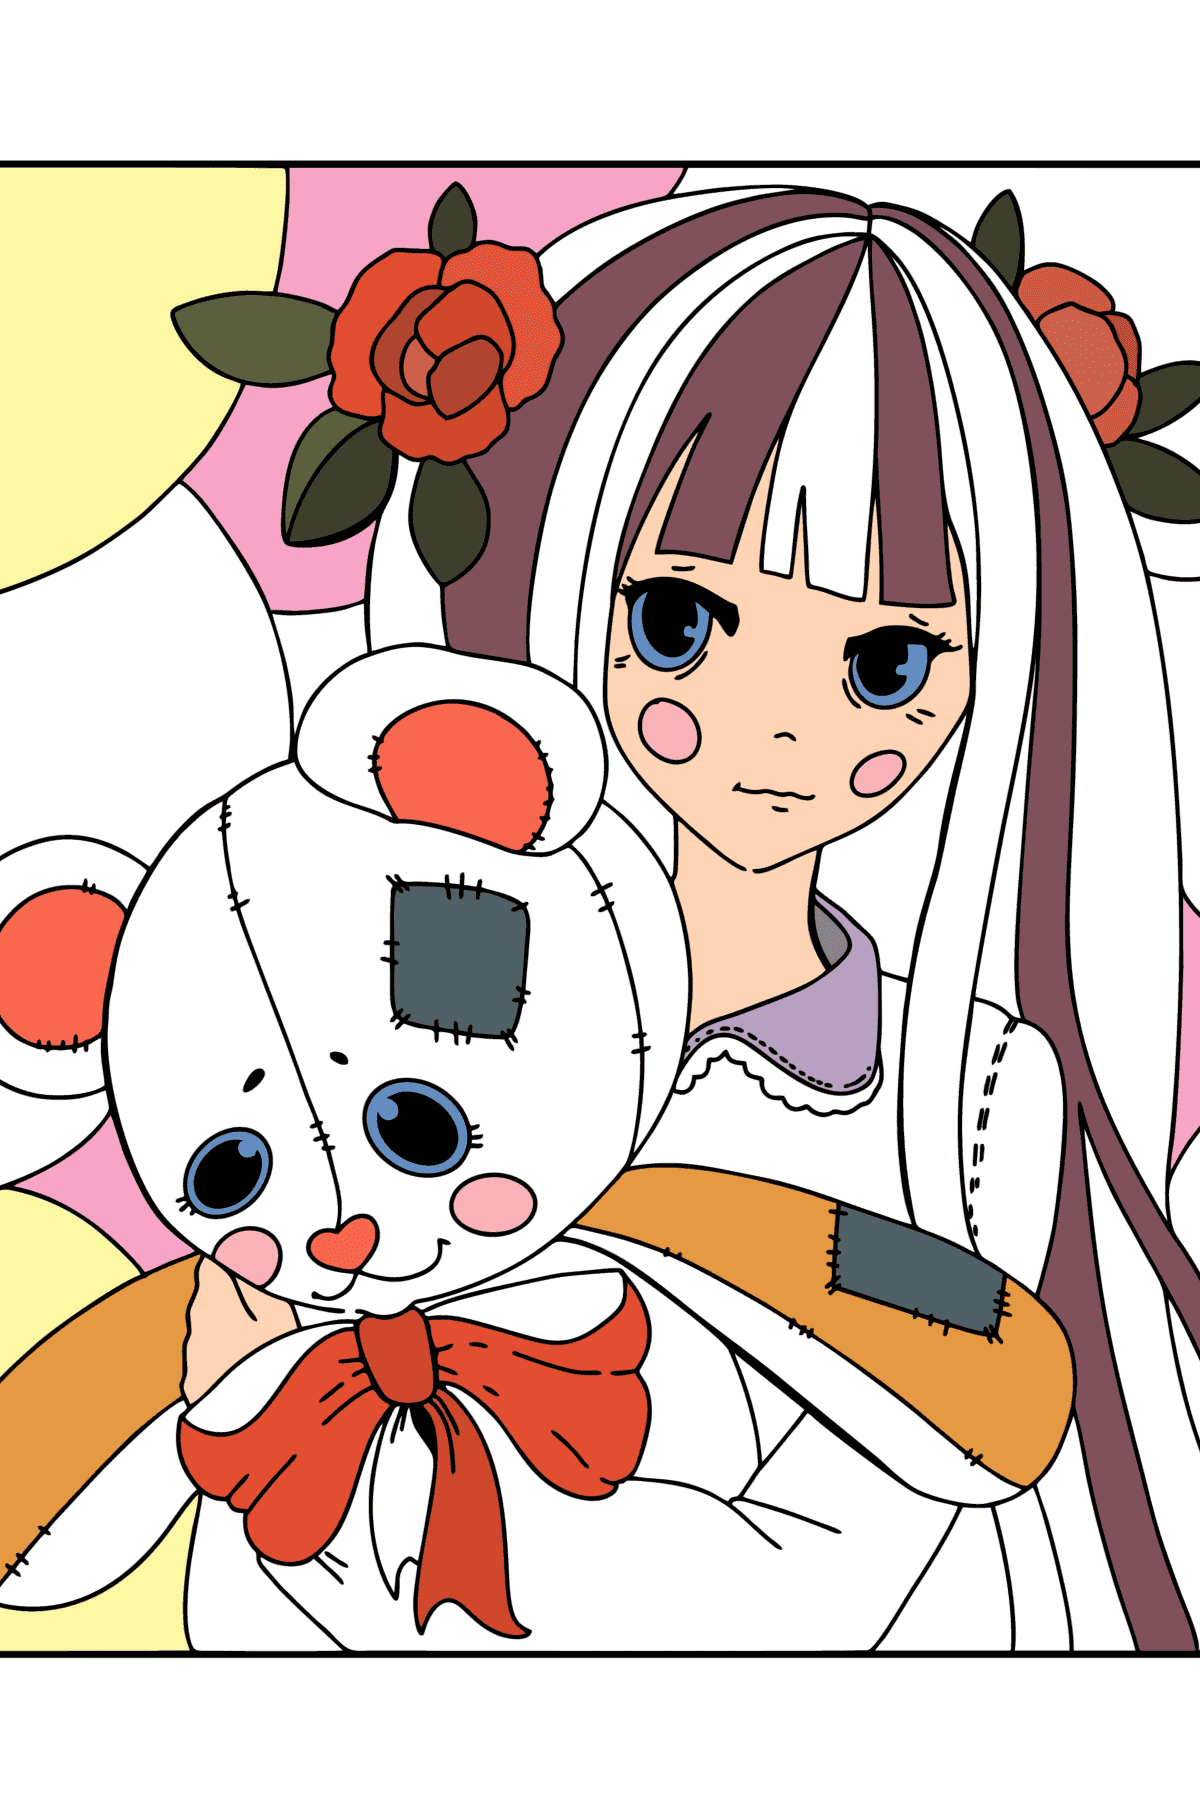 Anime-meisje met een teddybeer kleurplaat - kleurplaten voor kinderen